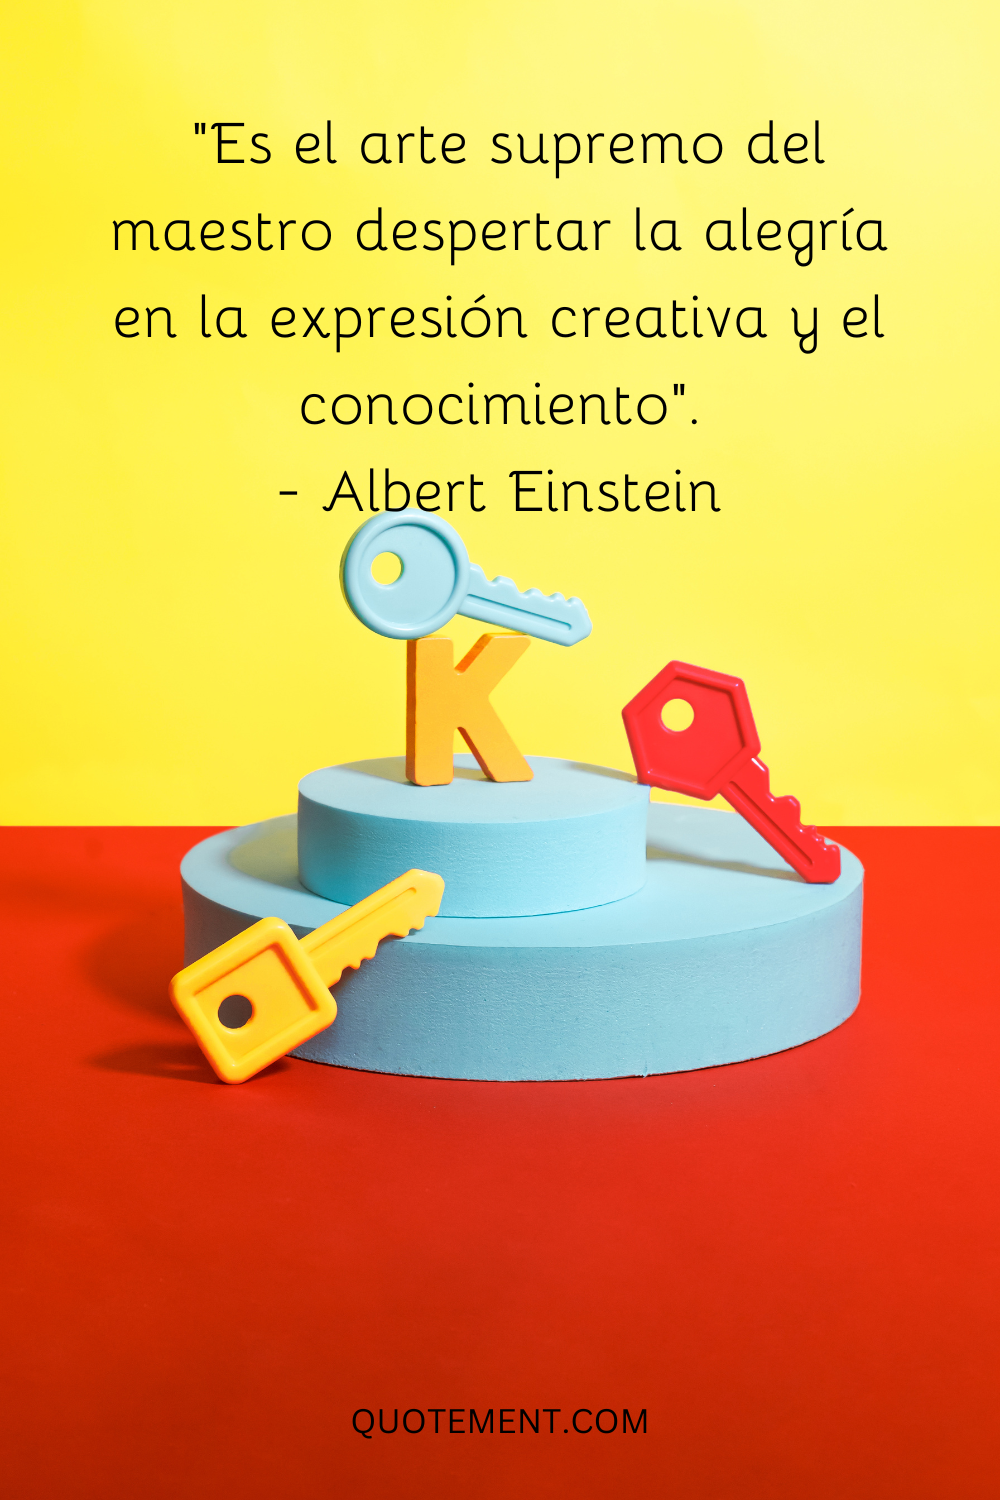 Es el arte supremo del maestro despertar la alegría en la expresión creativa y el conocimiento